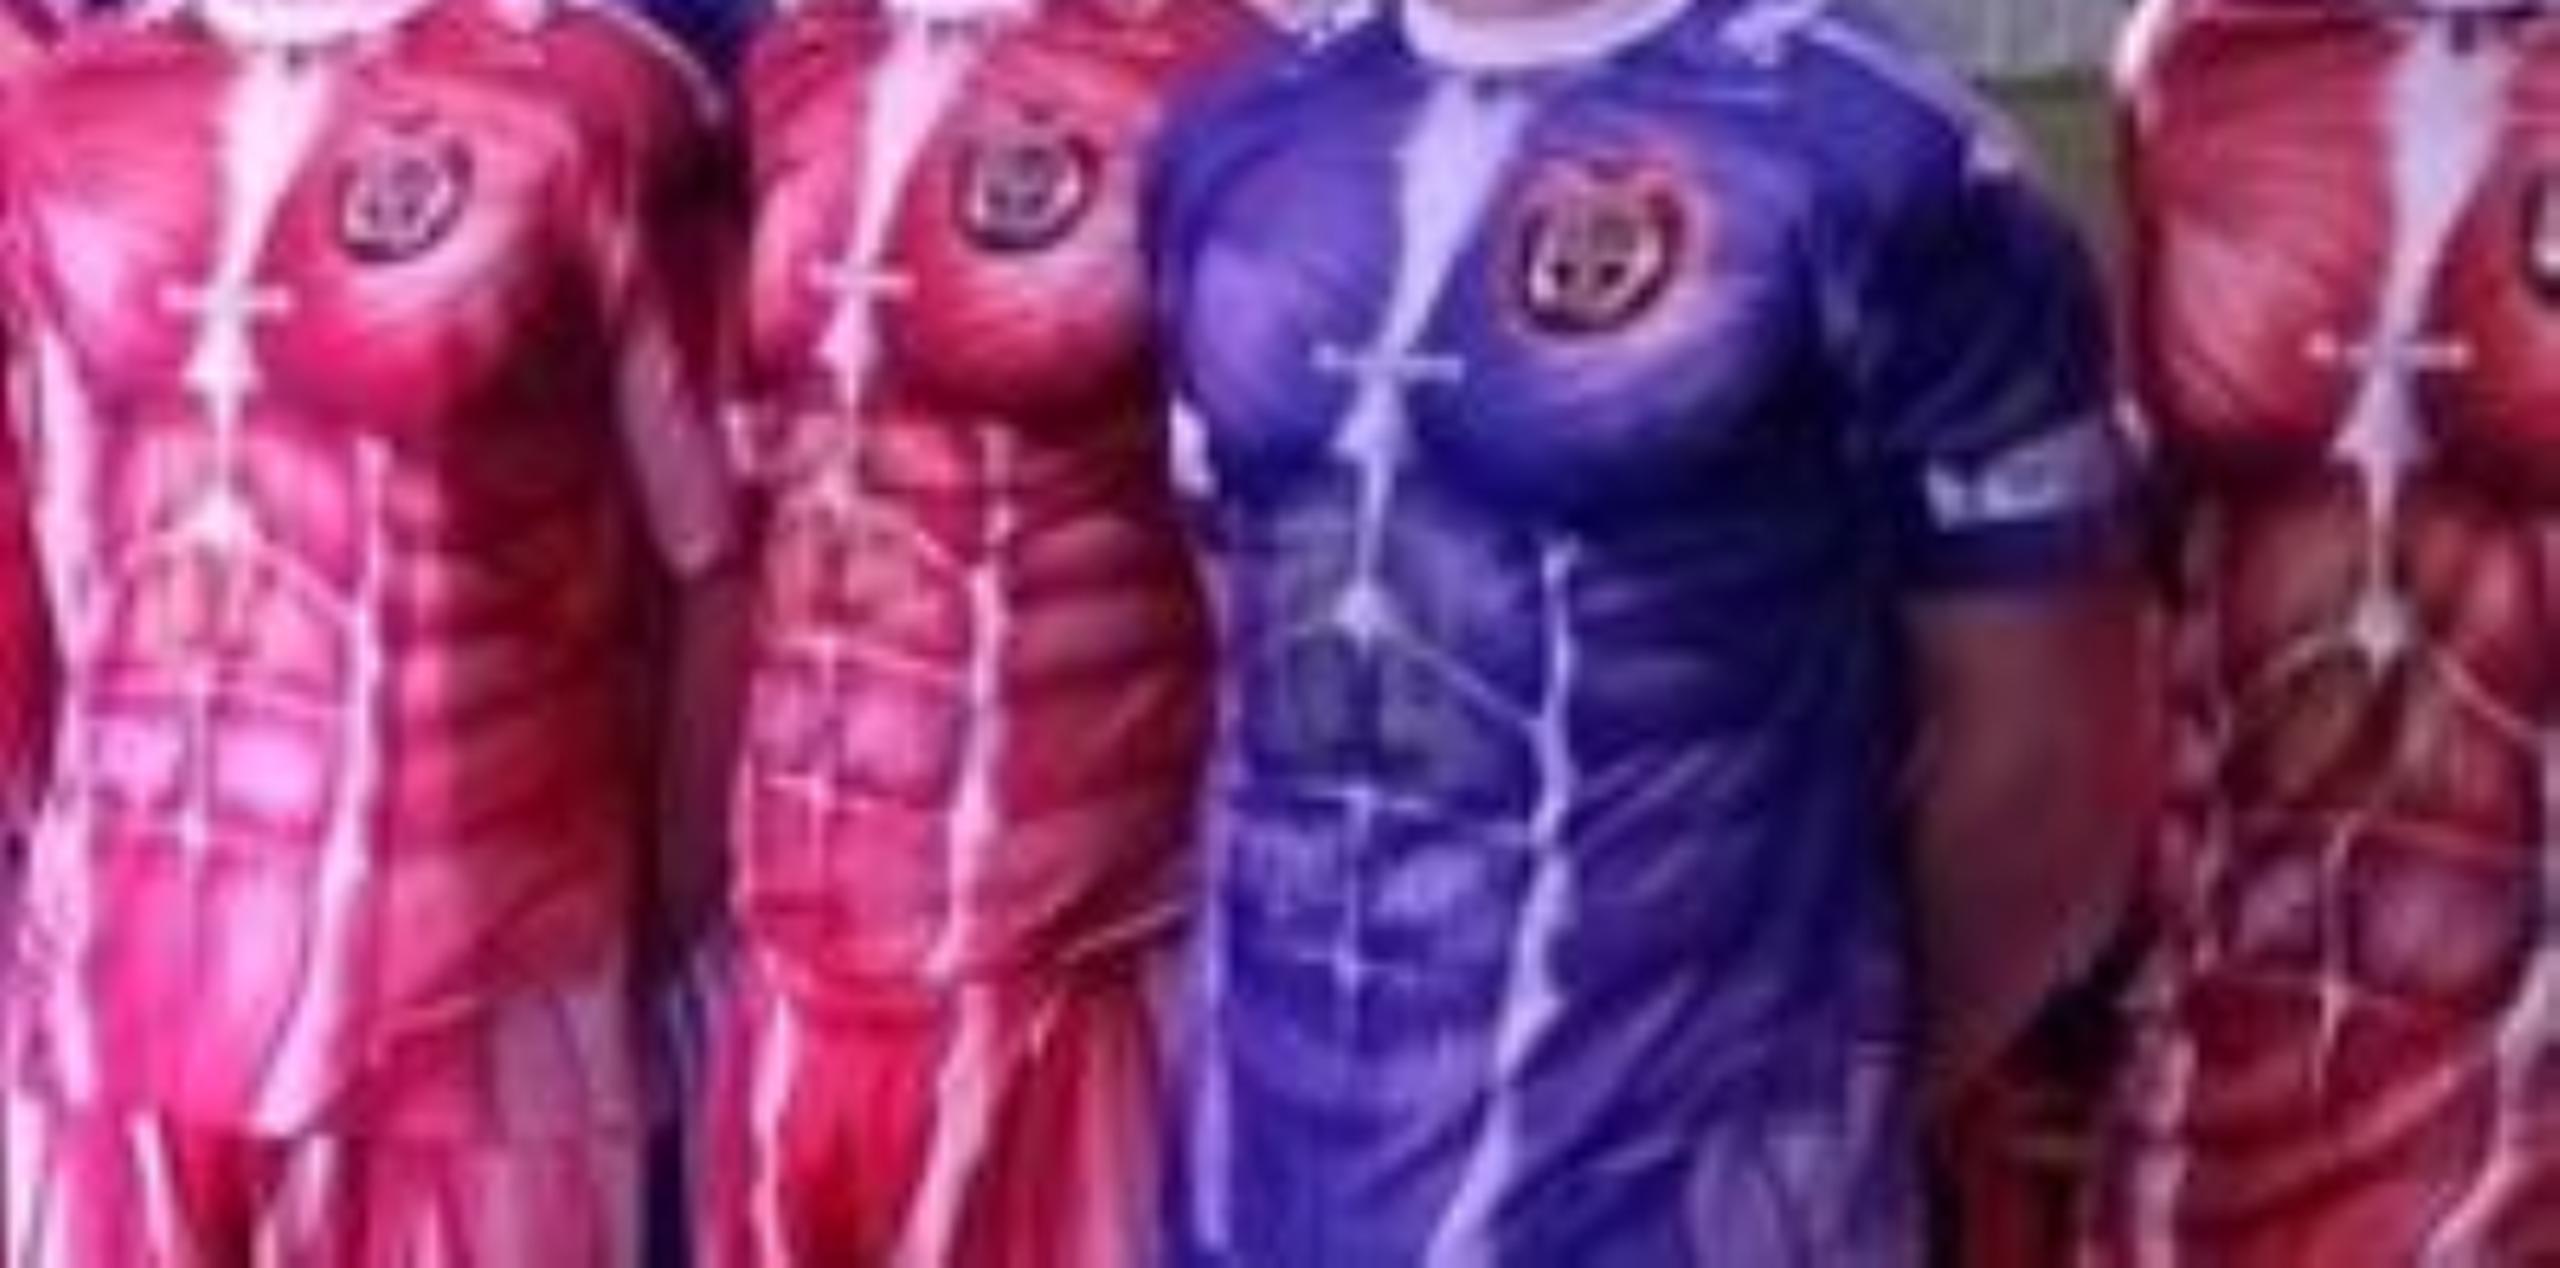 Los uniformes del CD Palencia ya han dado la vuelta al mundo desde que el equipo los presentó esta semana. (Captura/Twitter)